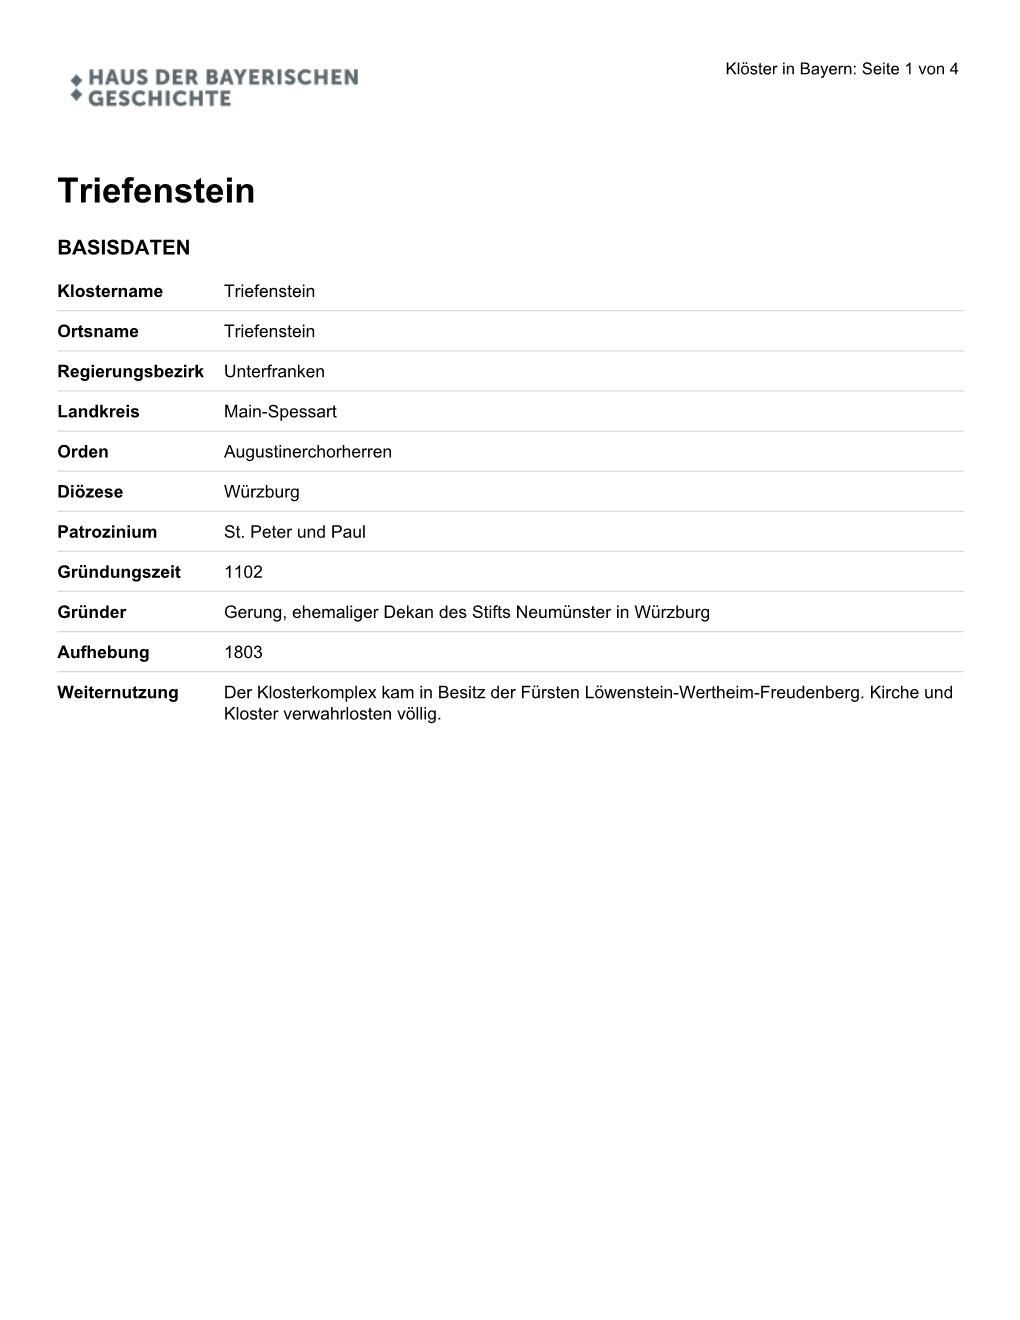 Triefenstein